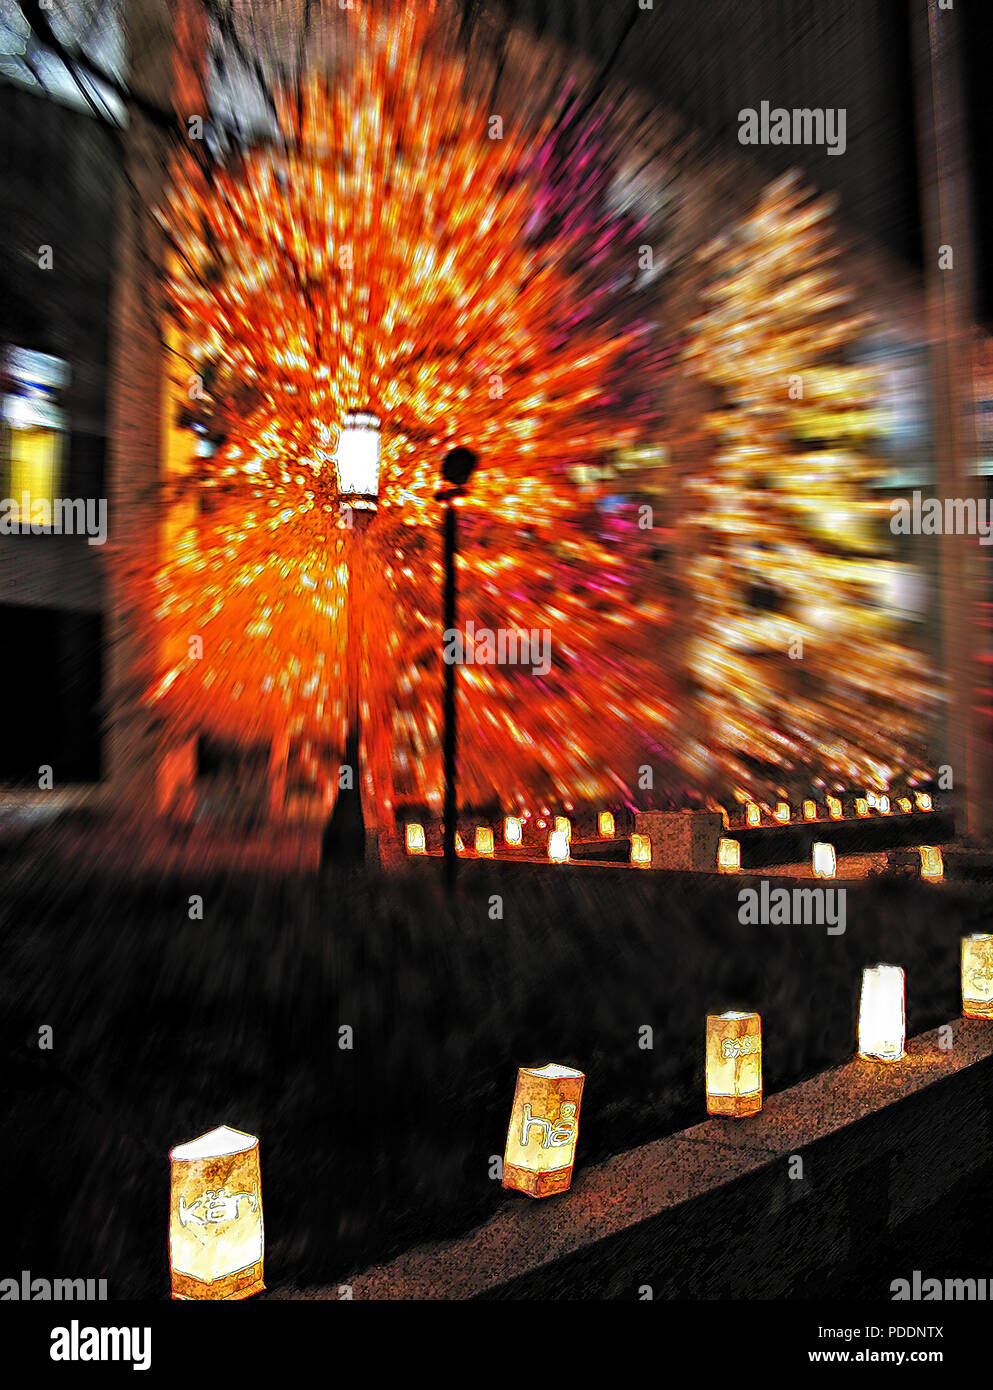 Auf der HLT-Kirche Büro in Salt Lake City, Utah, USA Weihnachten bringt festliche Beleuchtung der Saison zu feiern. Hier finden Sie traditionelle ligh Stockfoto